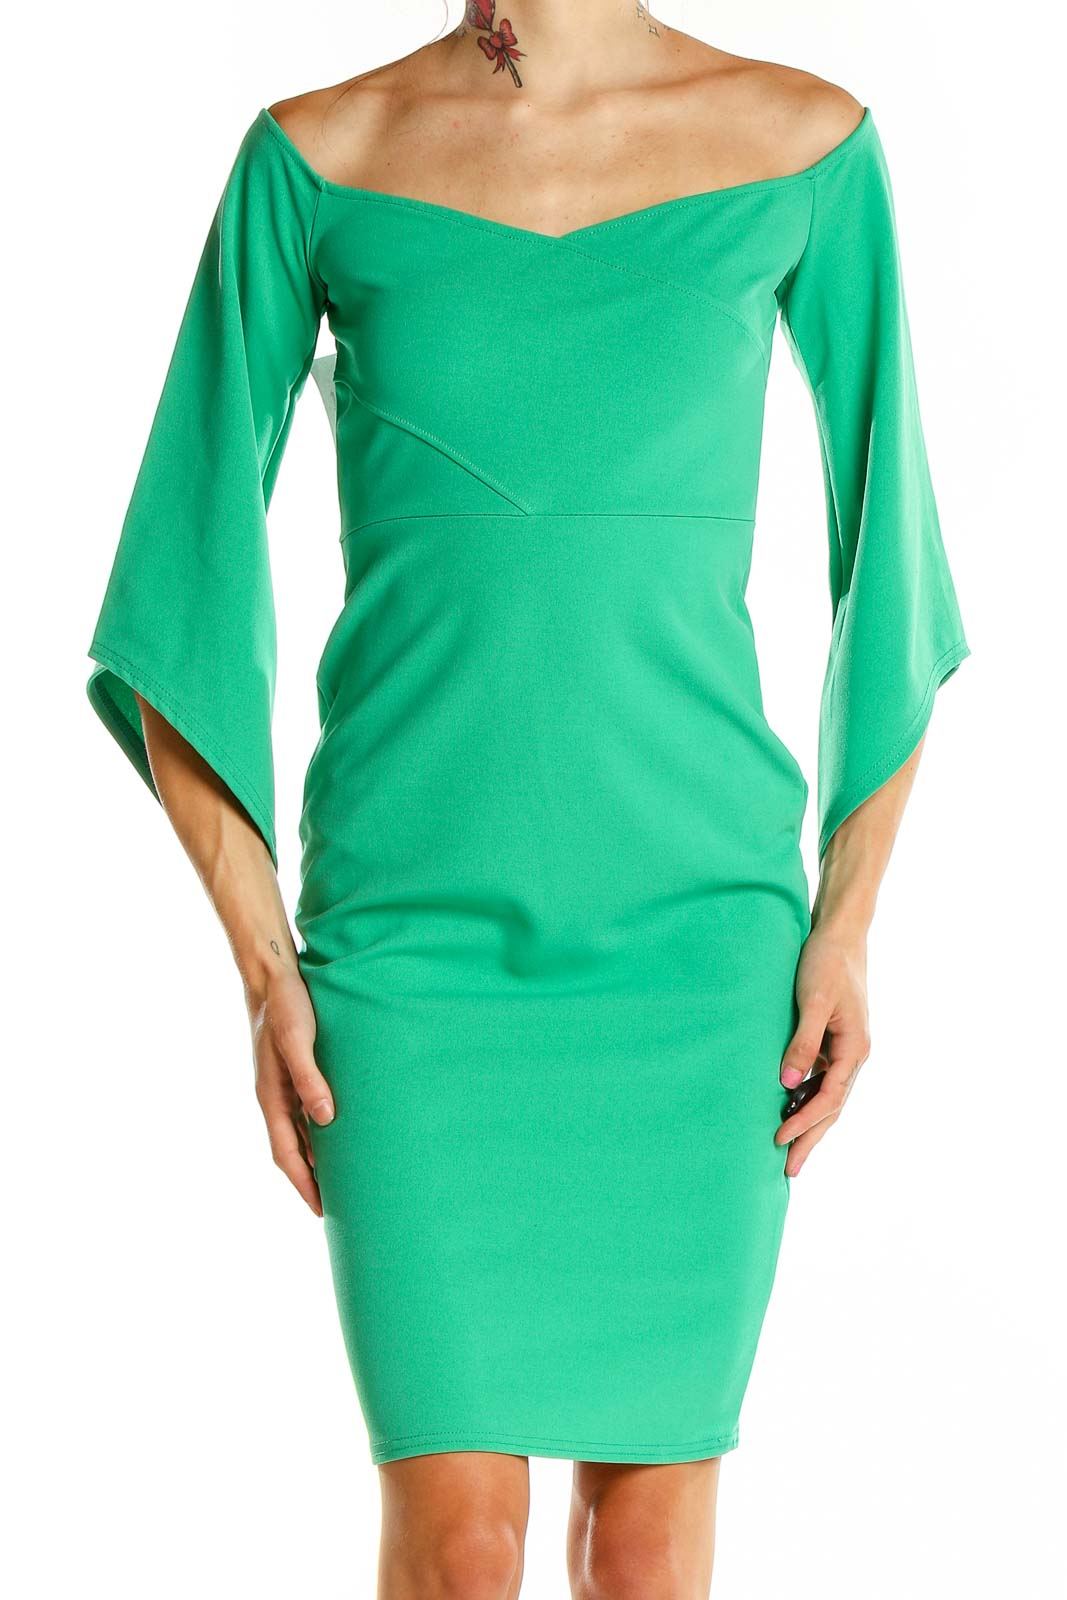 Green Off Shoulder Cocktail Dress Front